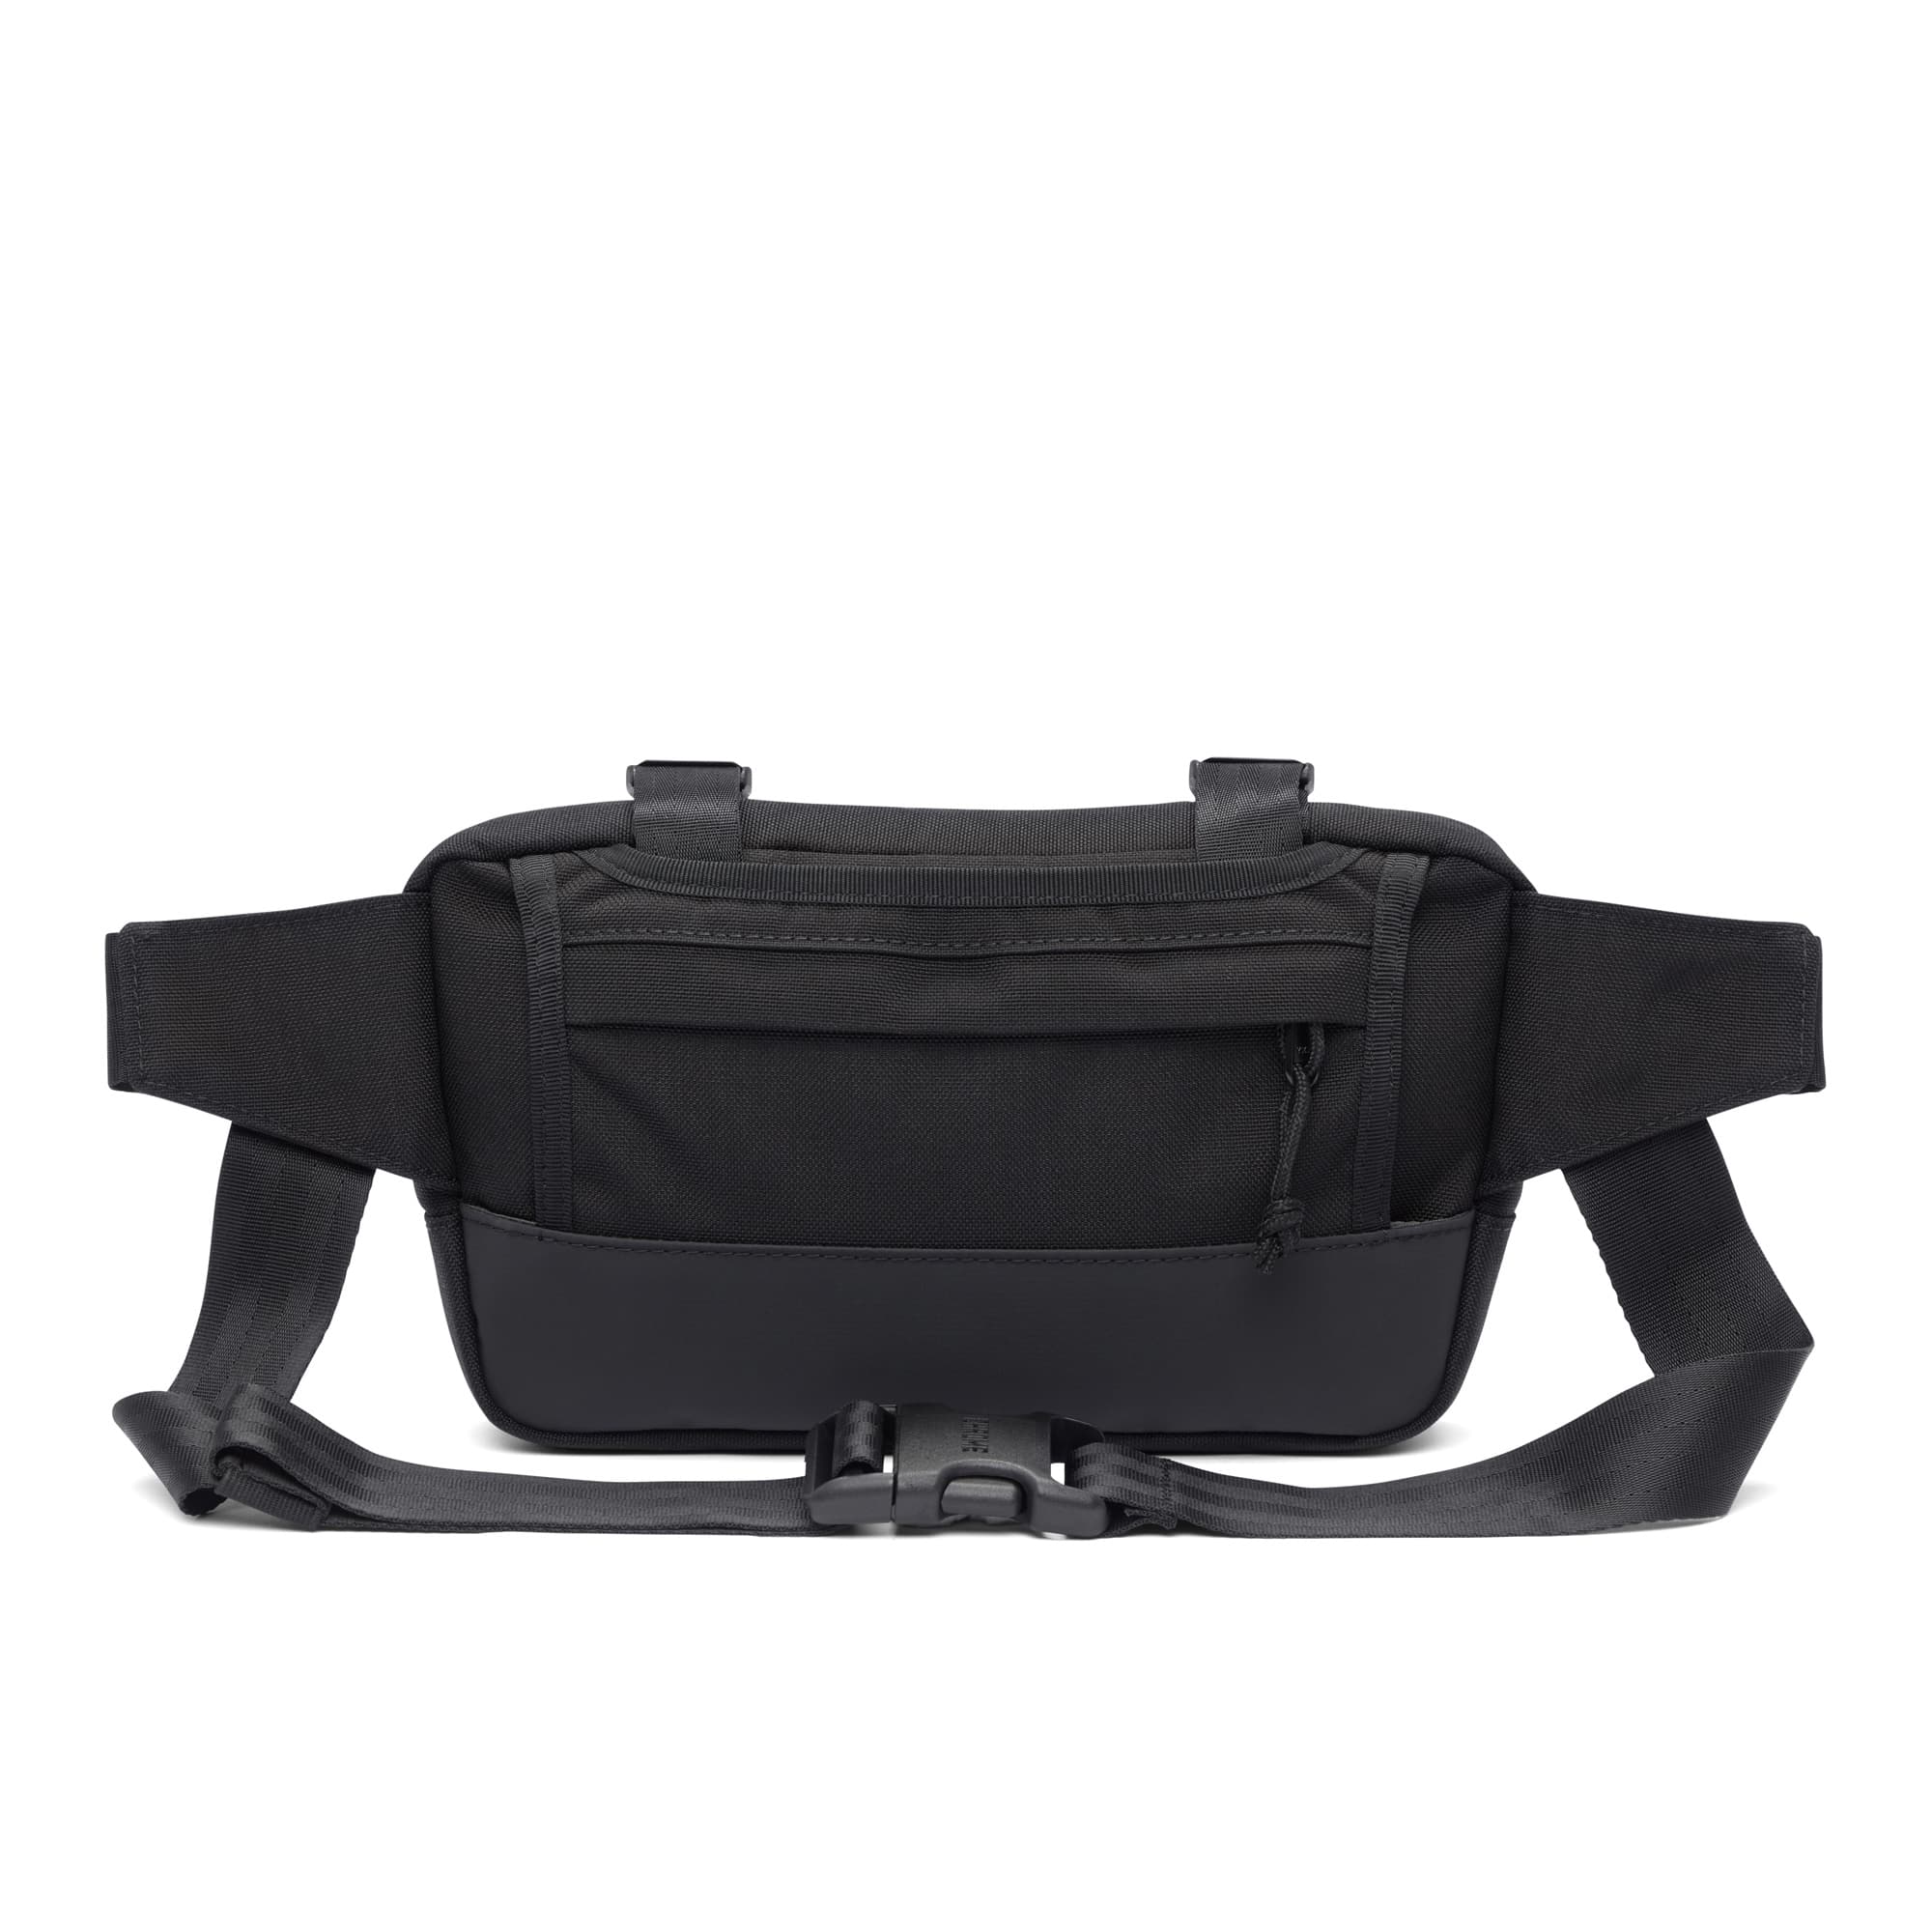 2L Doubletrack Frame Bag in black sling strap view #color_black